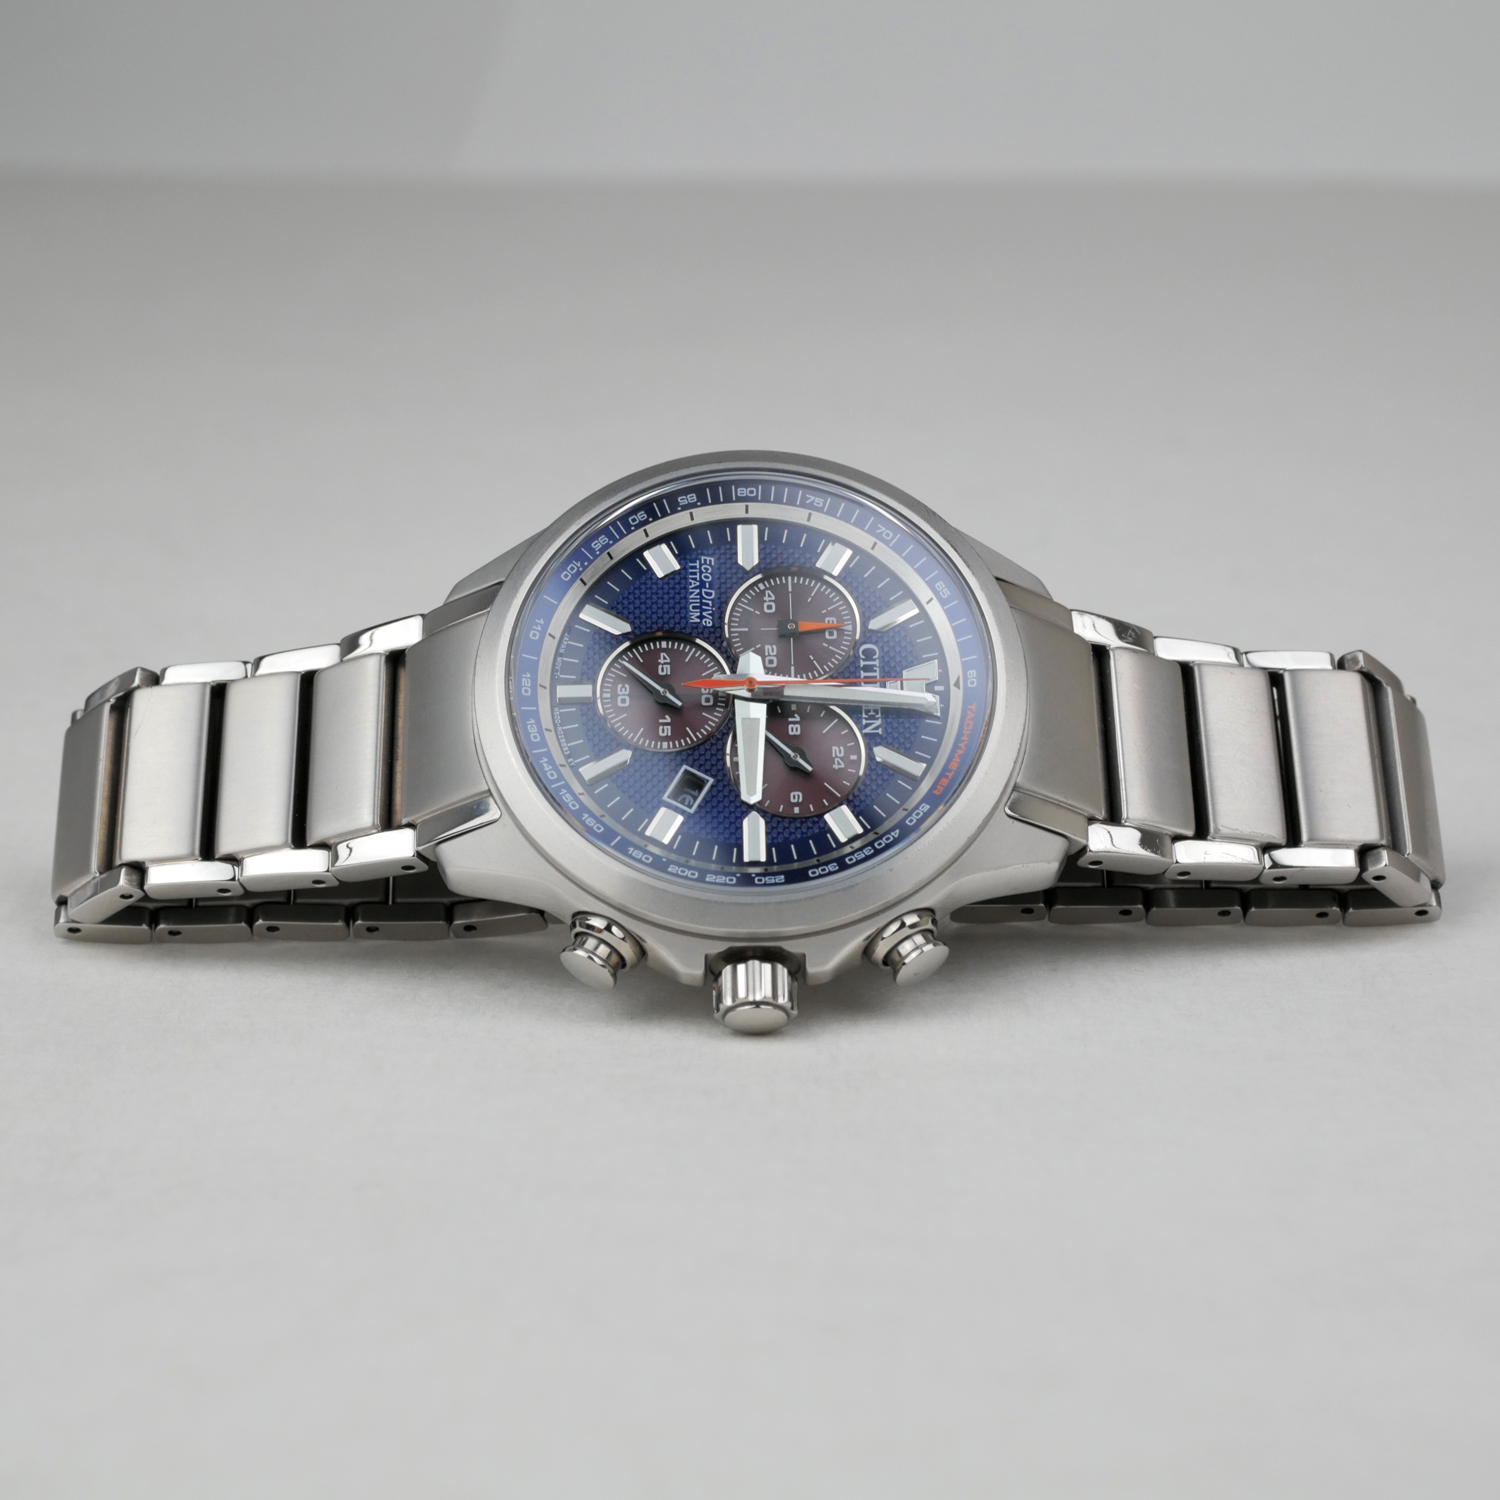 Citizen Eco-Drive Super Titanium Men's Chronograph Watch AT2471